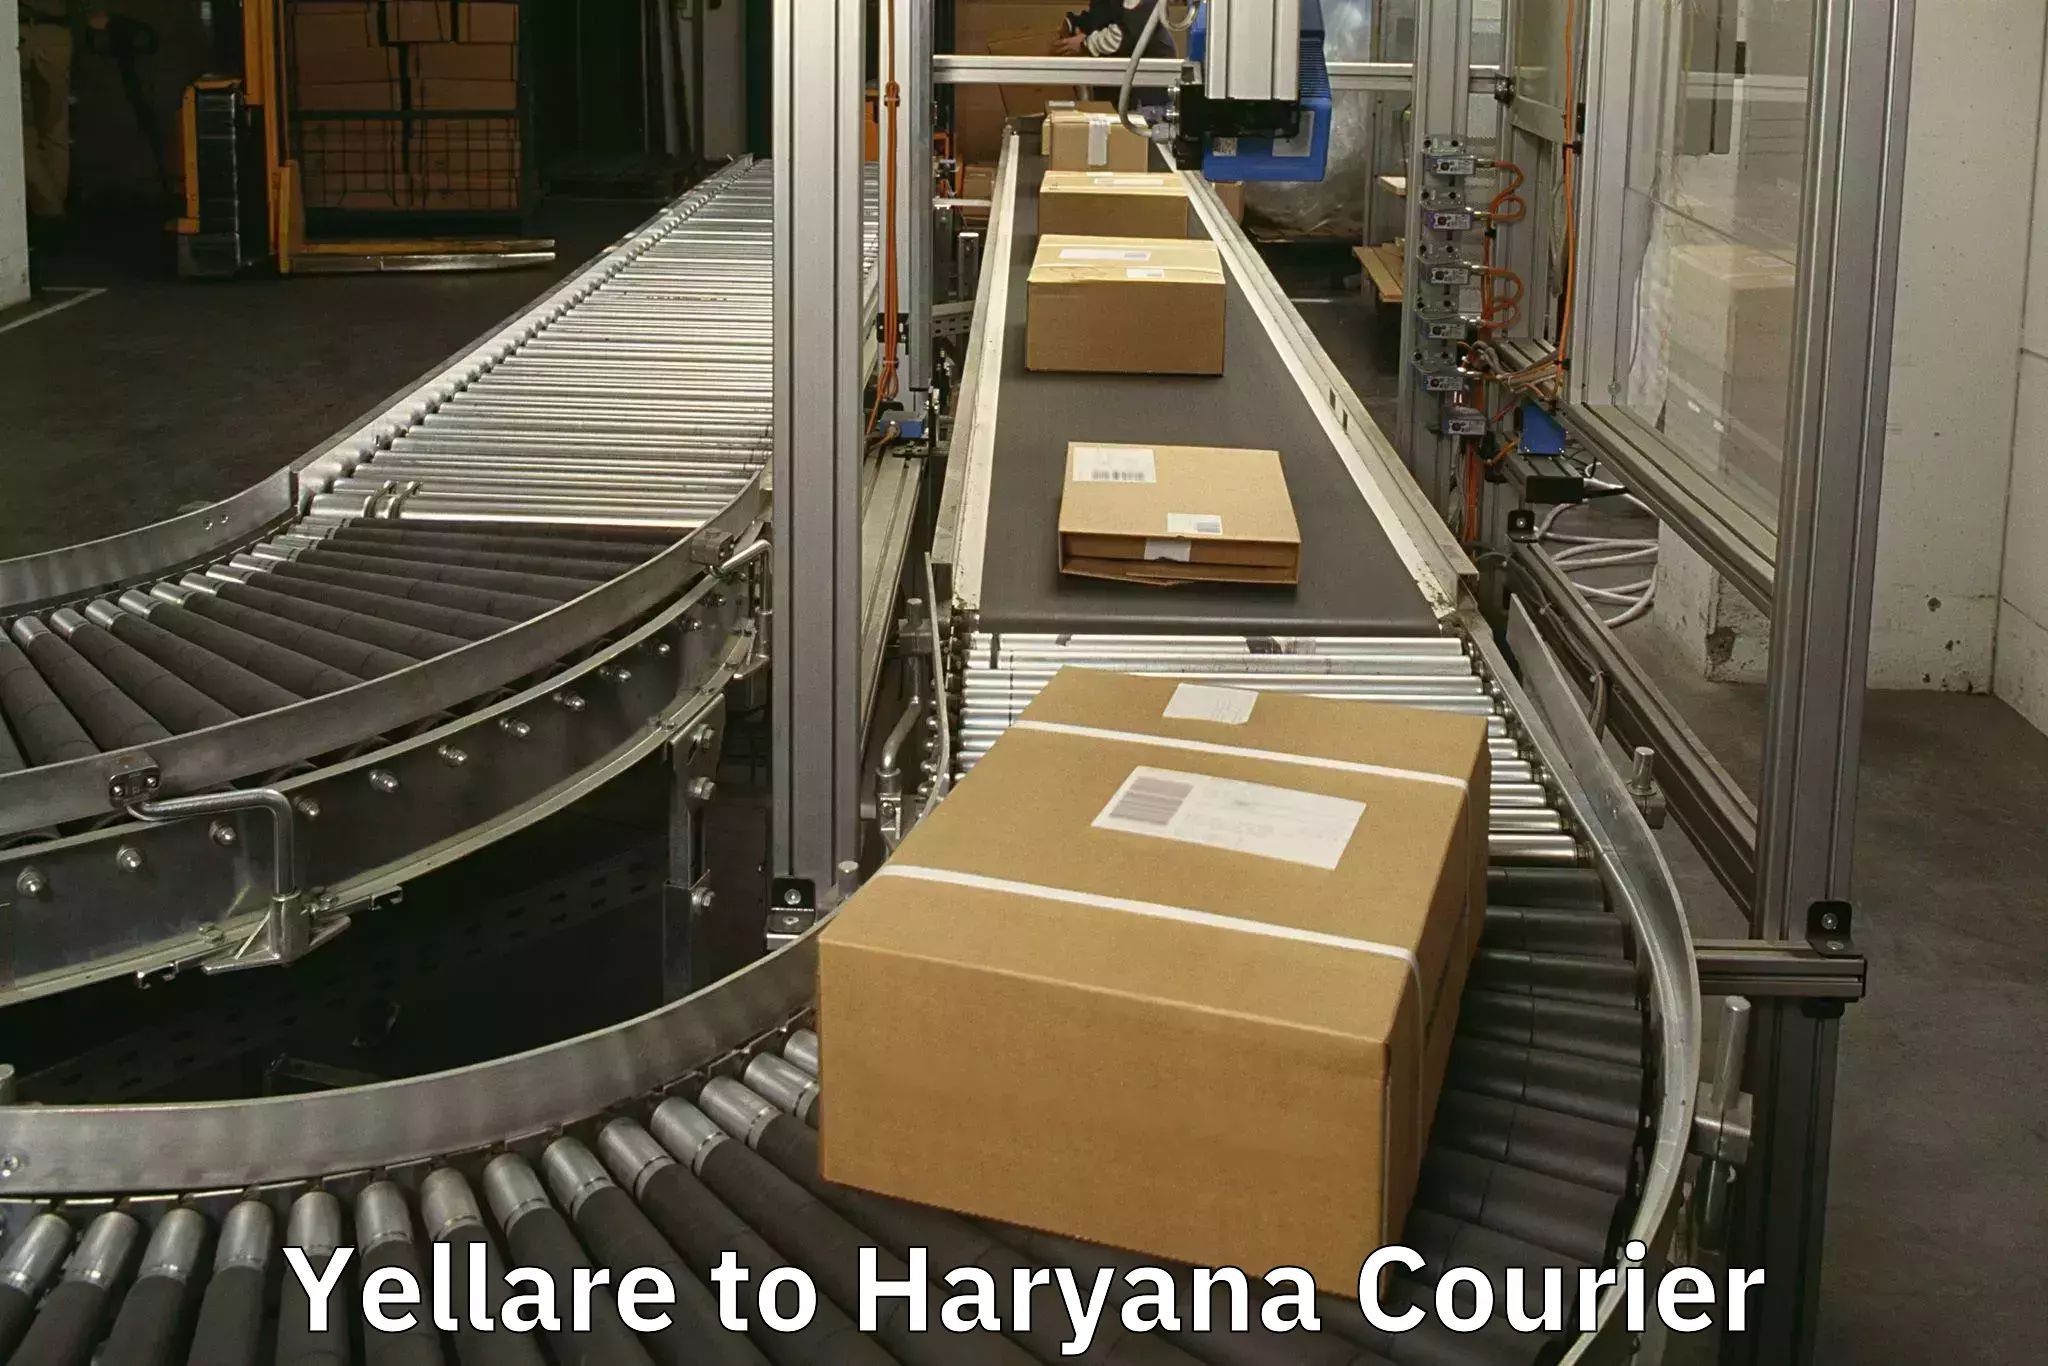 Luggage shipment tracking Yellare to Chaudhary Charan Singh Haryana Agricultural University Hisar